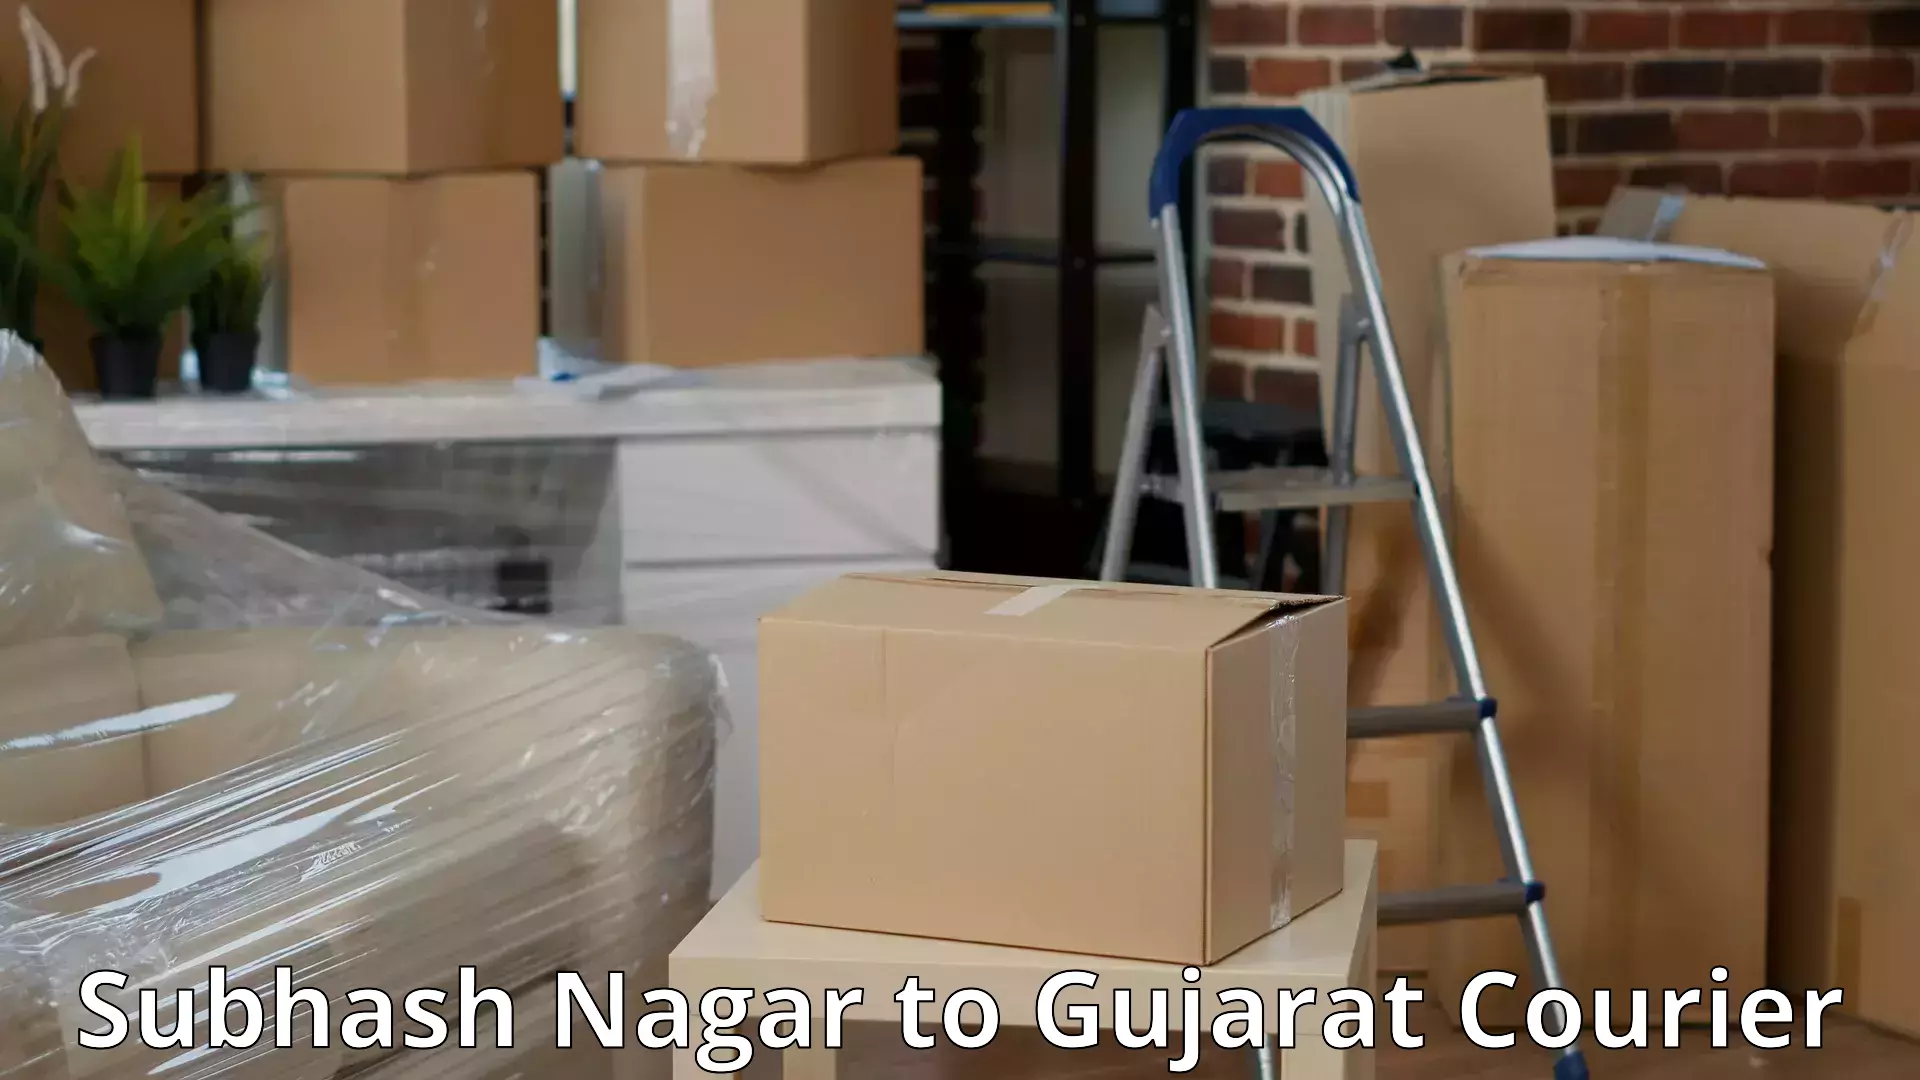 Furniture moving plans Subhash Nagar to Gujarat